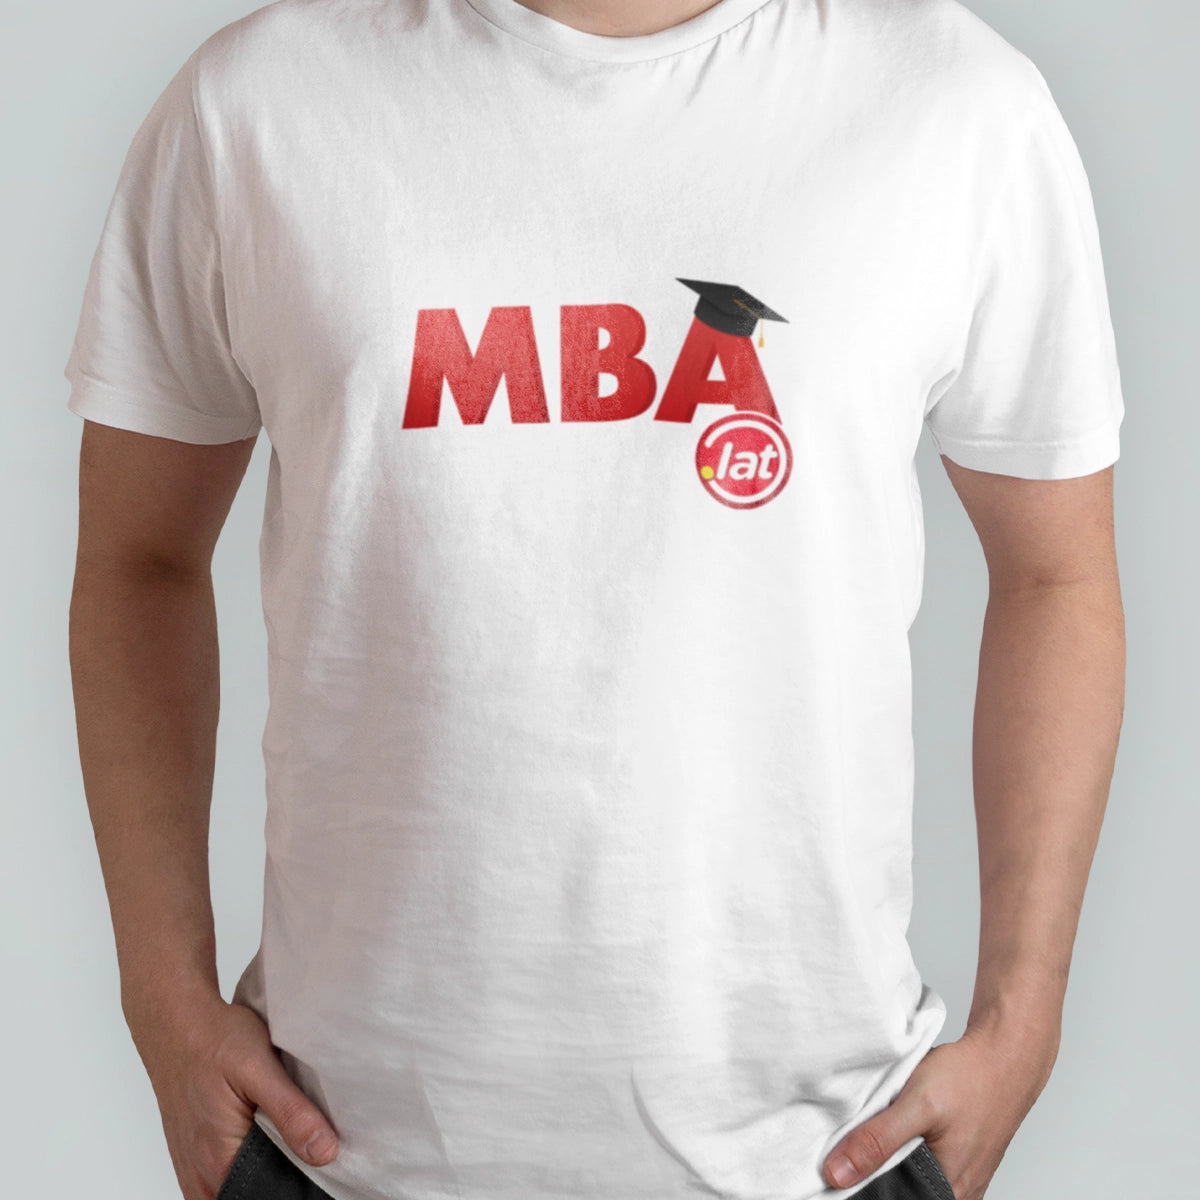 MBA.lat